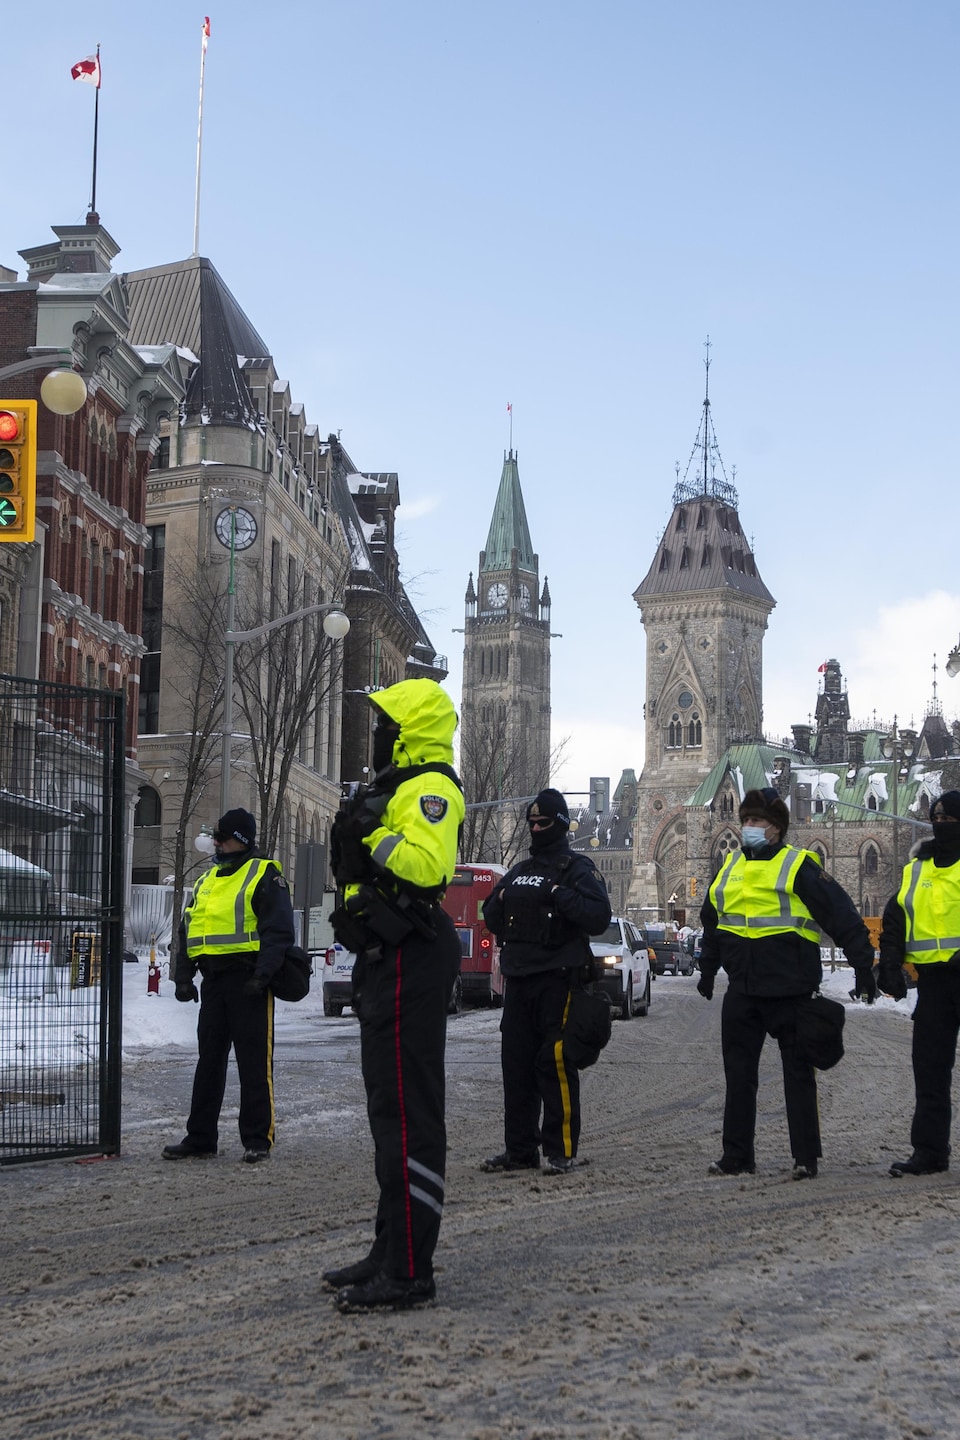 La tour de la Paix est vue derrière la police le long de la rue Queen, alors qu'ils restreignent l'accès aux rues autour de la colline du Parlement pour mettre fin à la manifestation des camionneurs à Ottawa, le samedi 19 février 2022.